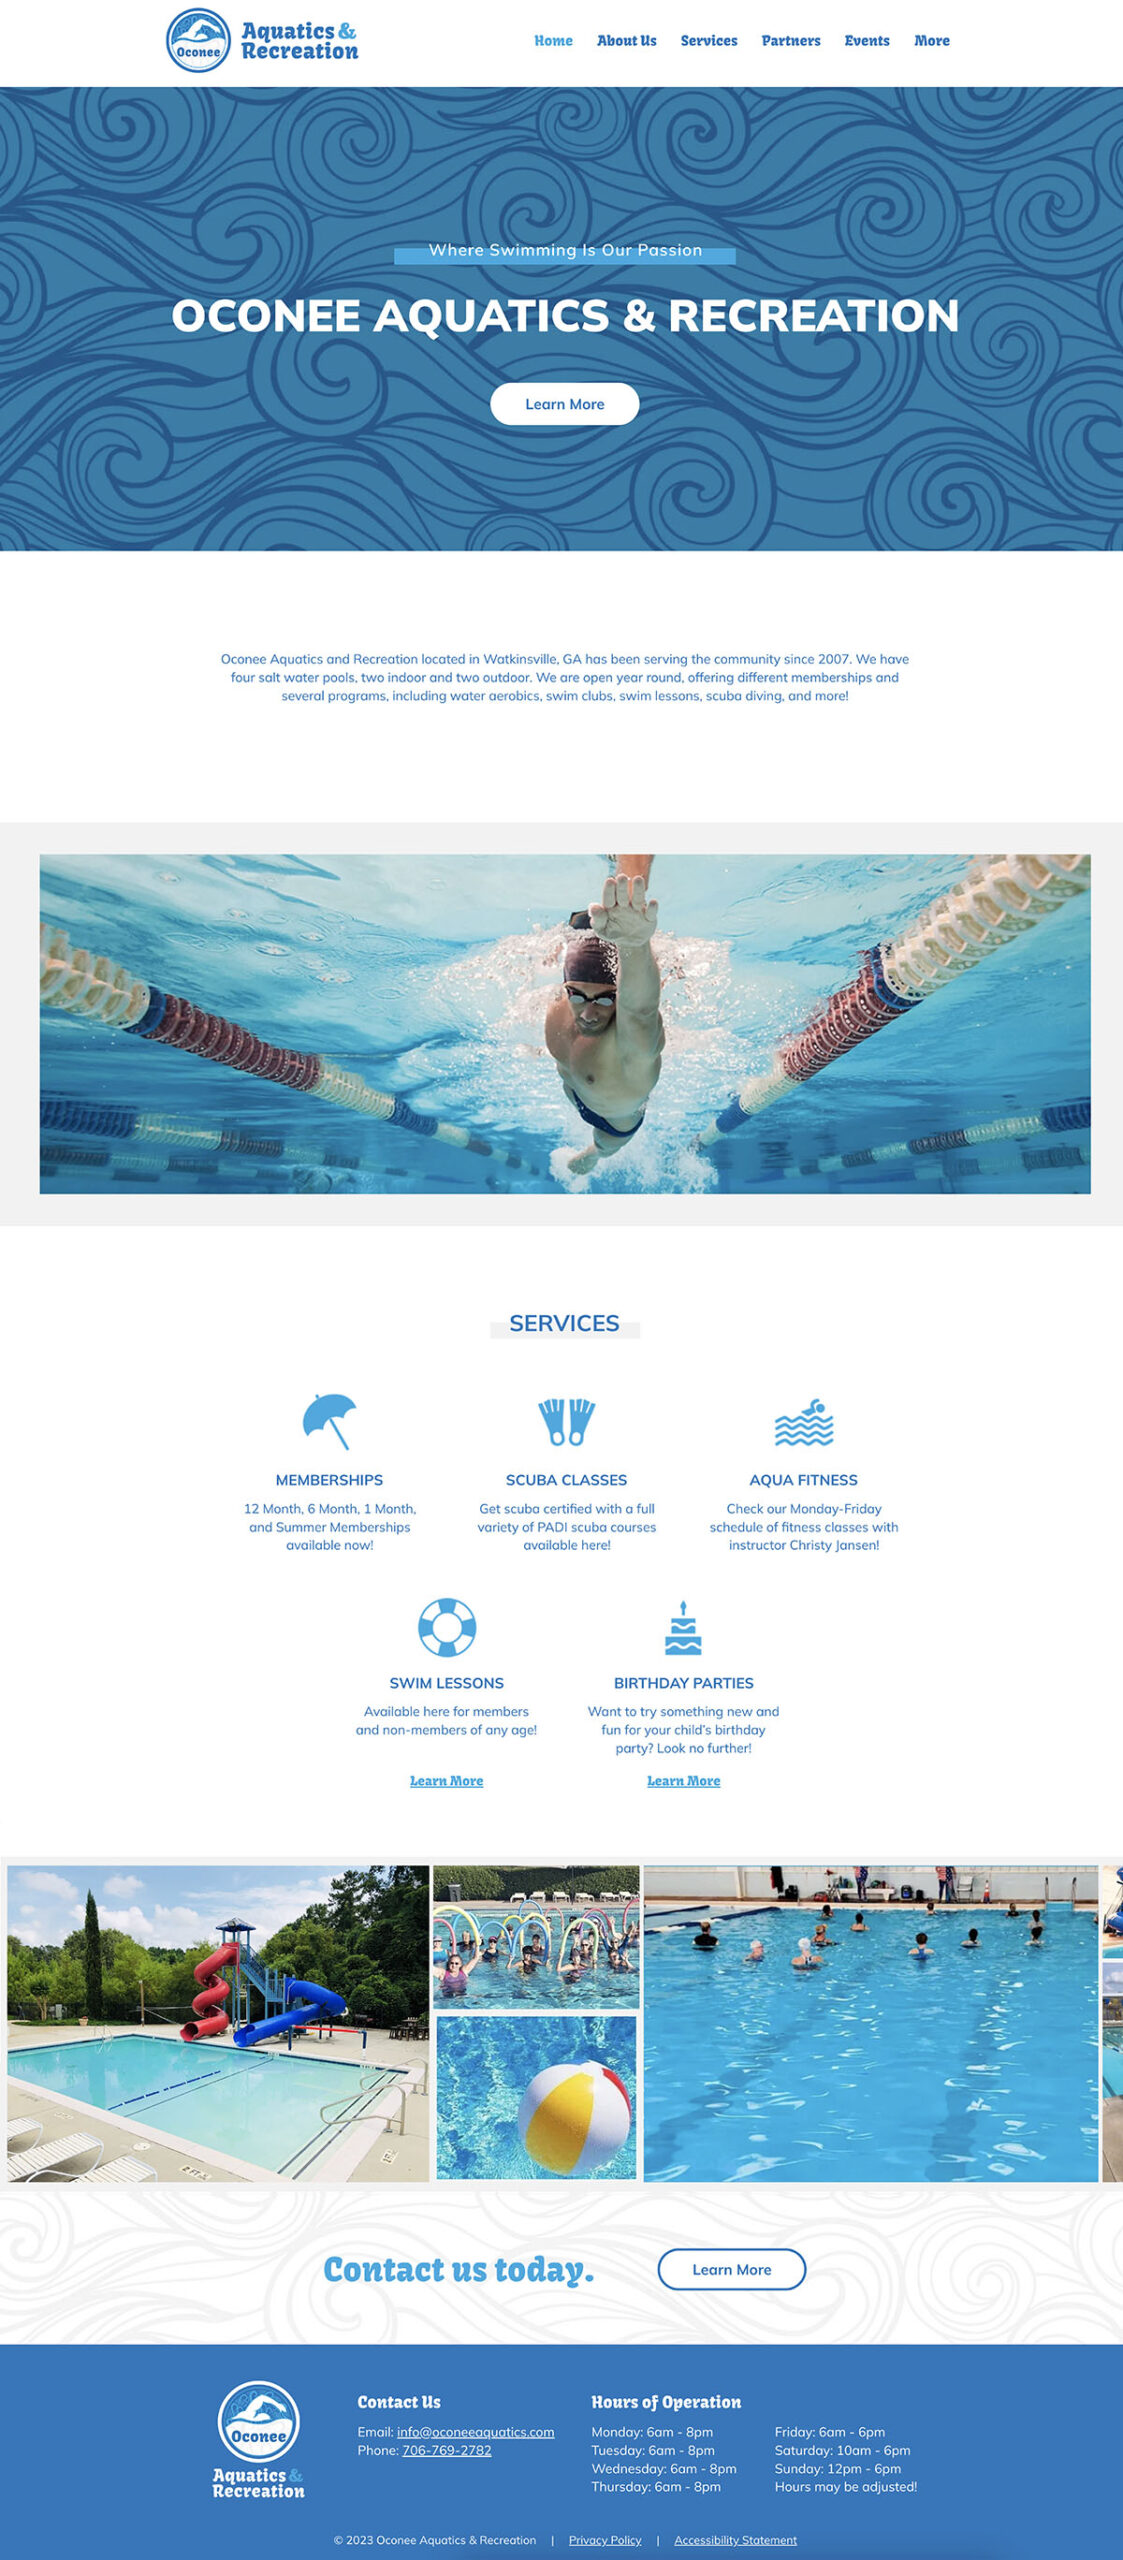 Oconee Aquatics website